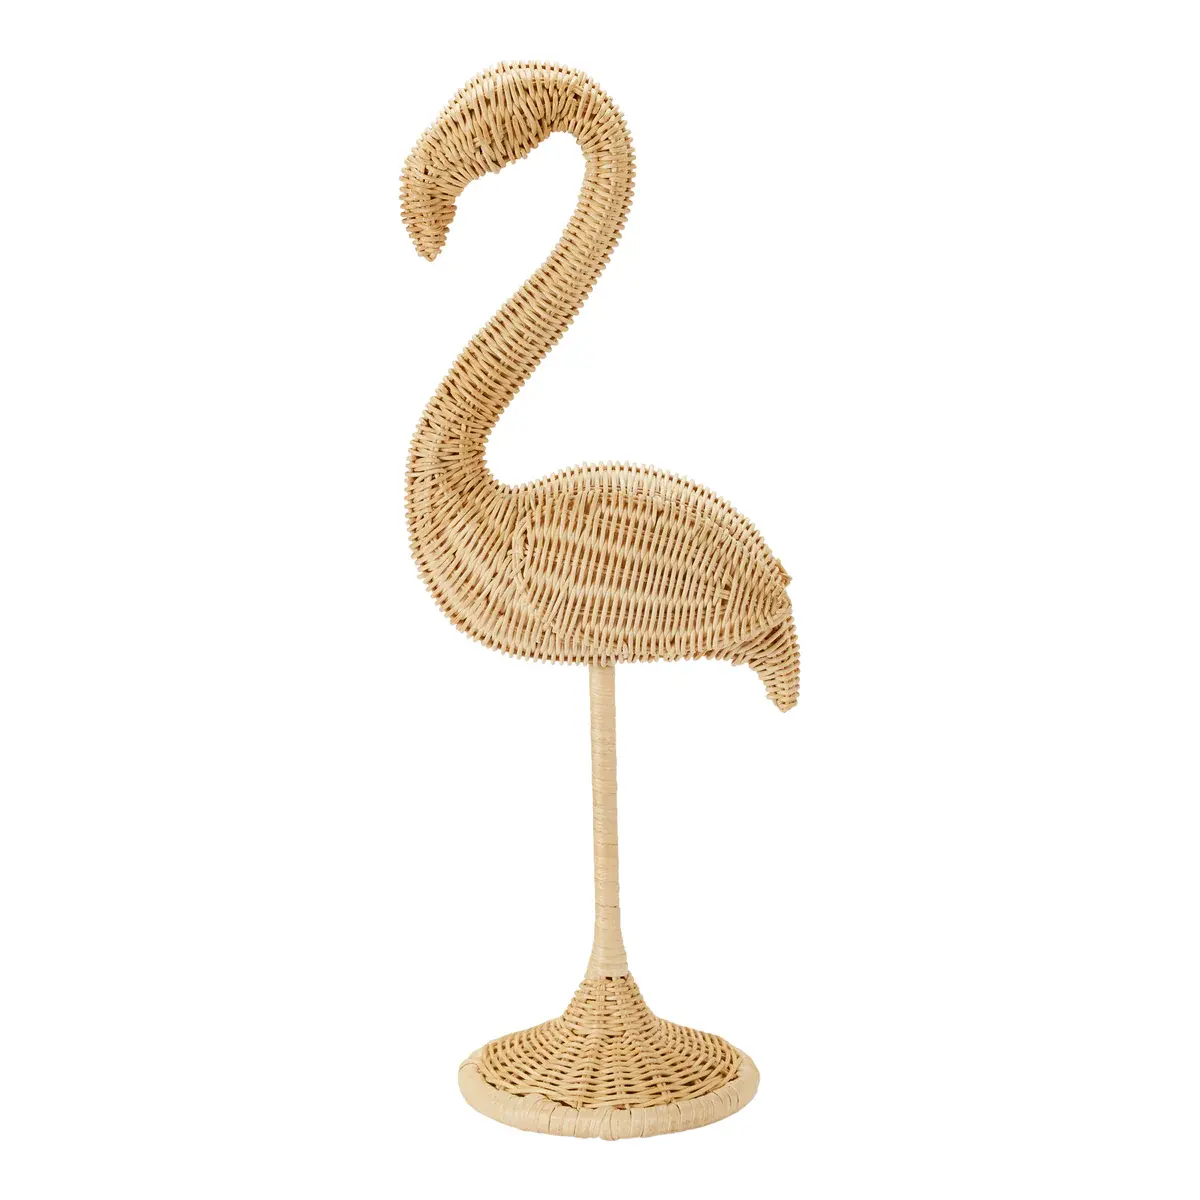 Acento decorativo contemporâneo do Rattan da boa sorte do flamingo do Rattan natural carismático para o hotel home do restaurante